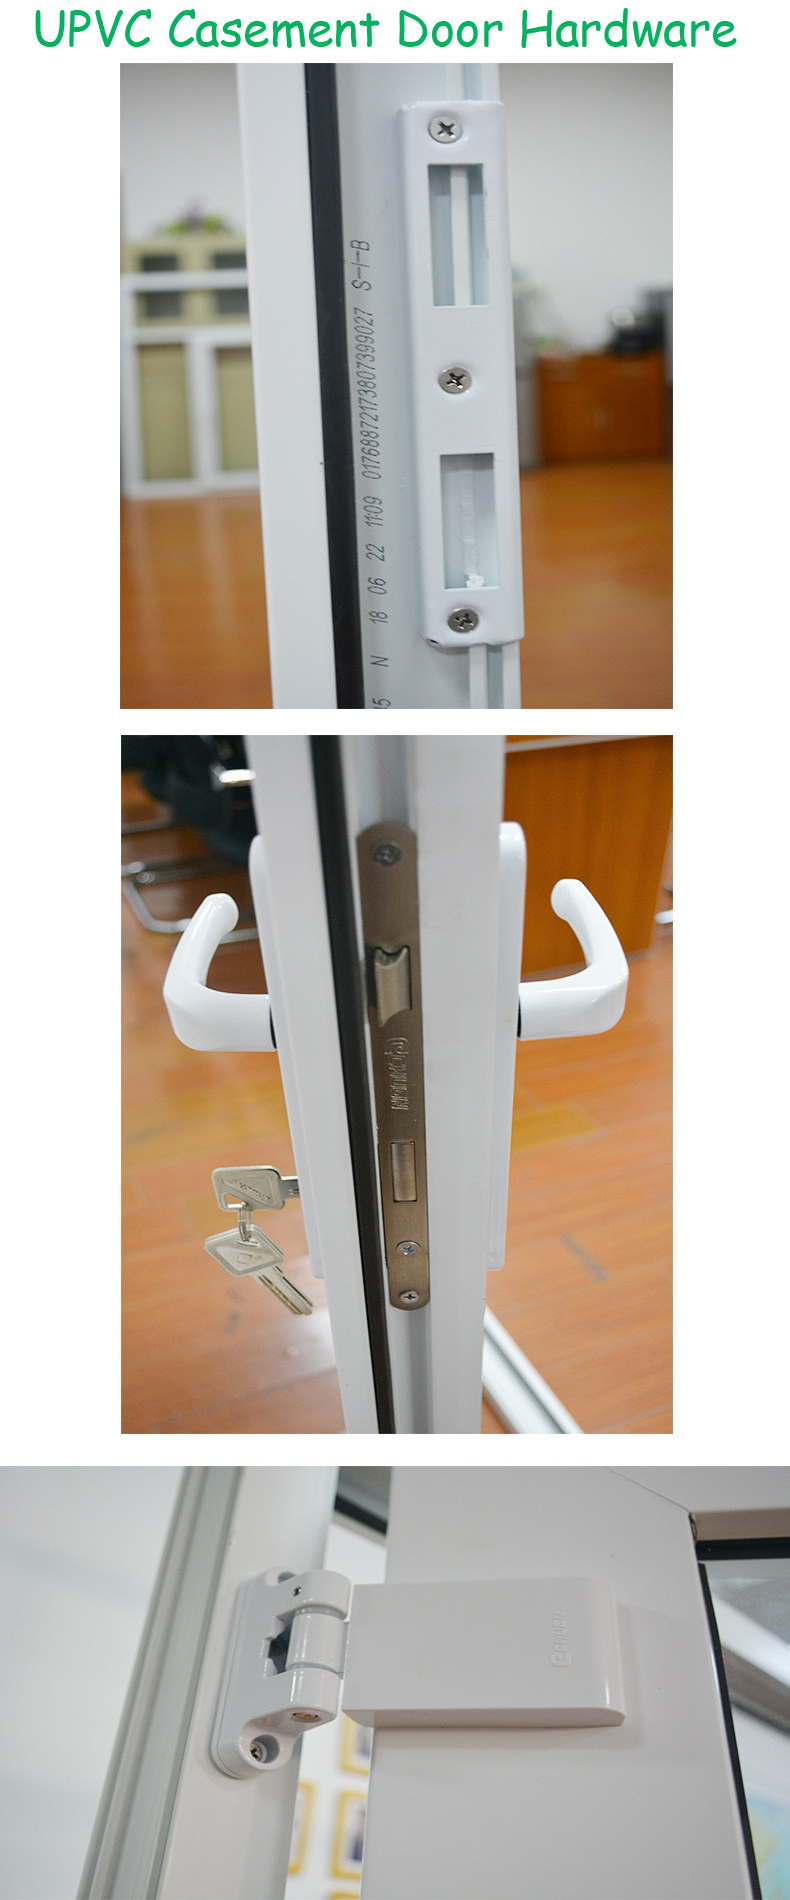 UPVC Casement Door - hardware.jpg